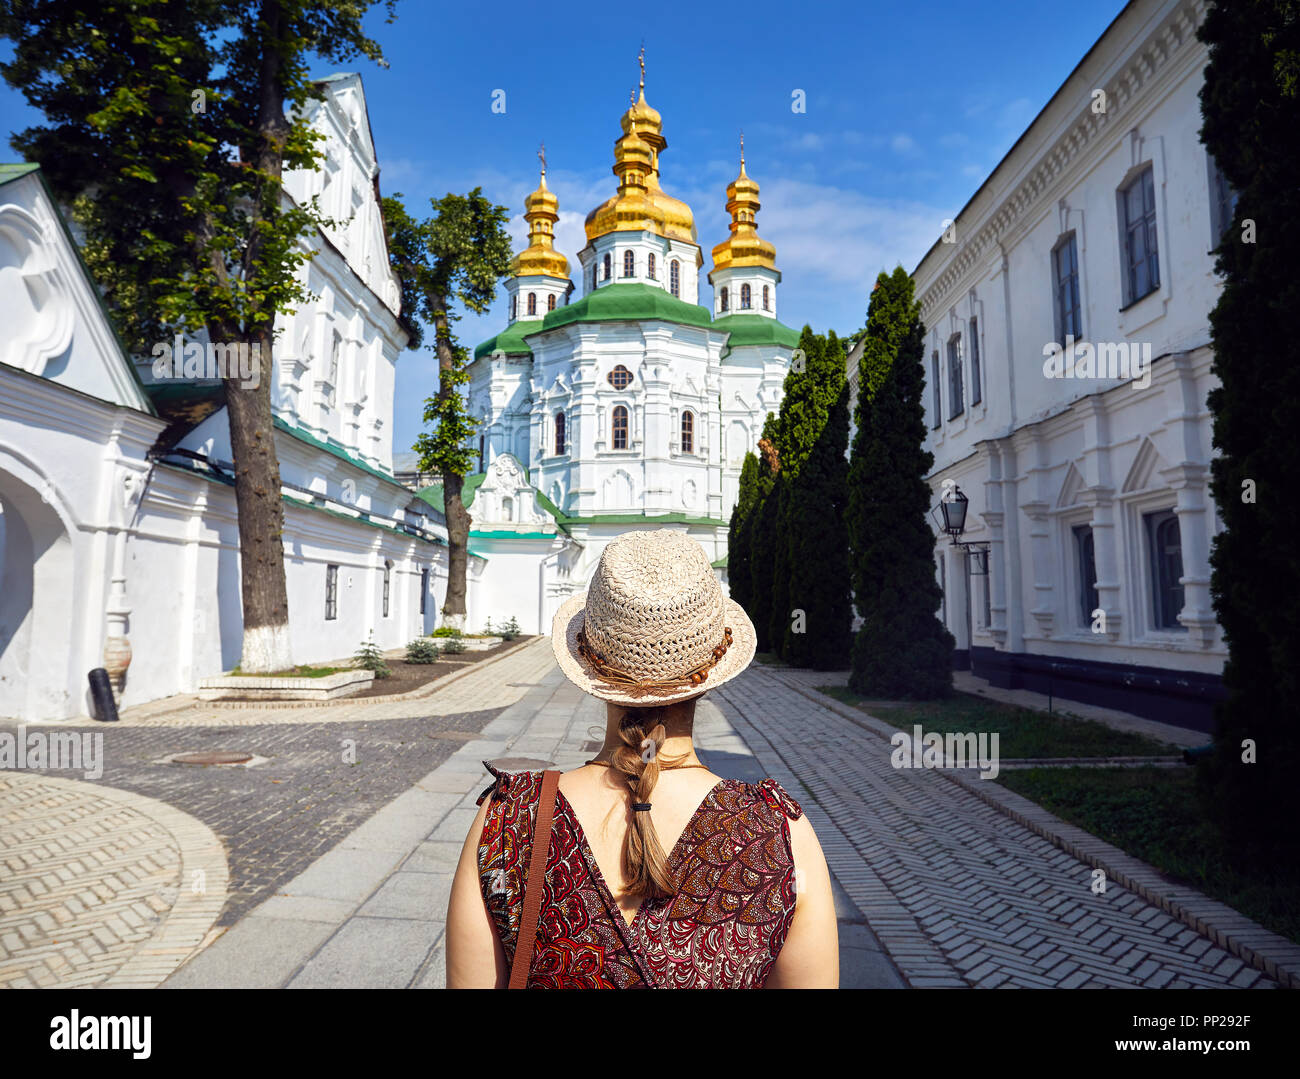 Frau mit Hut in die Kirche mit goldenen Kuppeln in Kiew Pechersk Lavra Christian komplex. Alte historische Architektur in Kiew, Ukraine Stockfoto